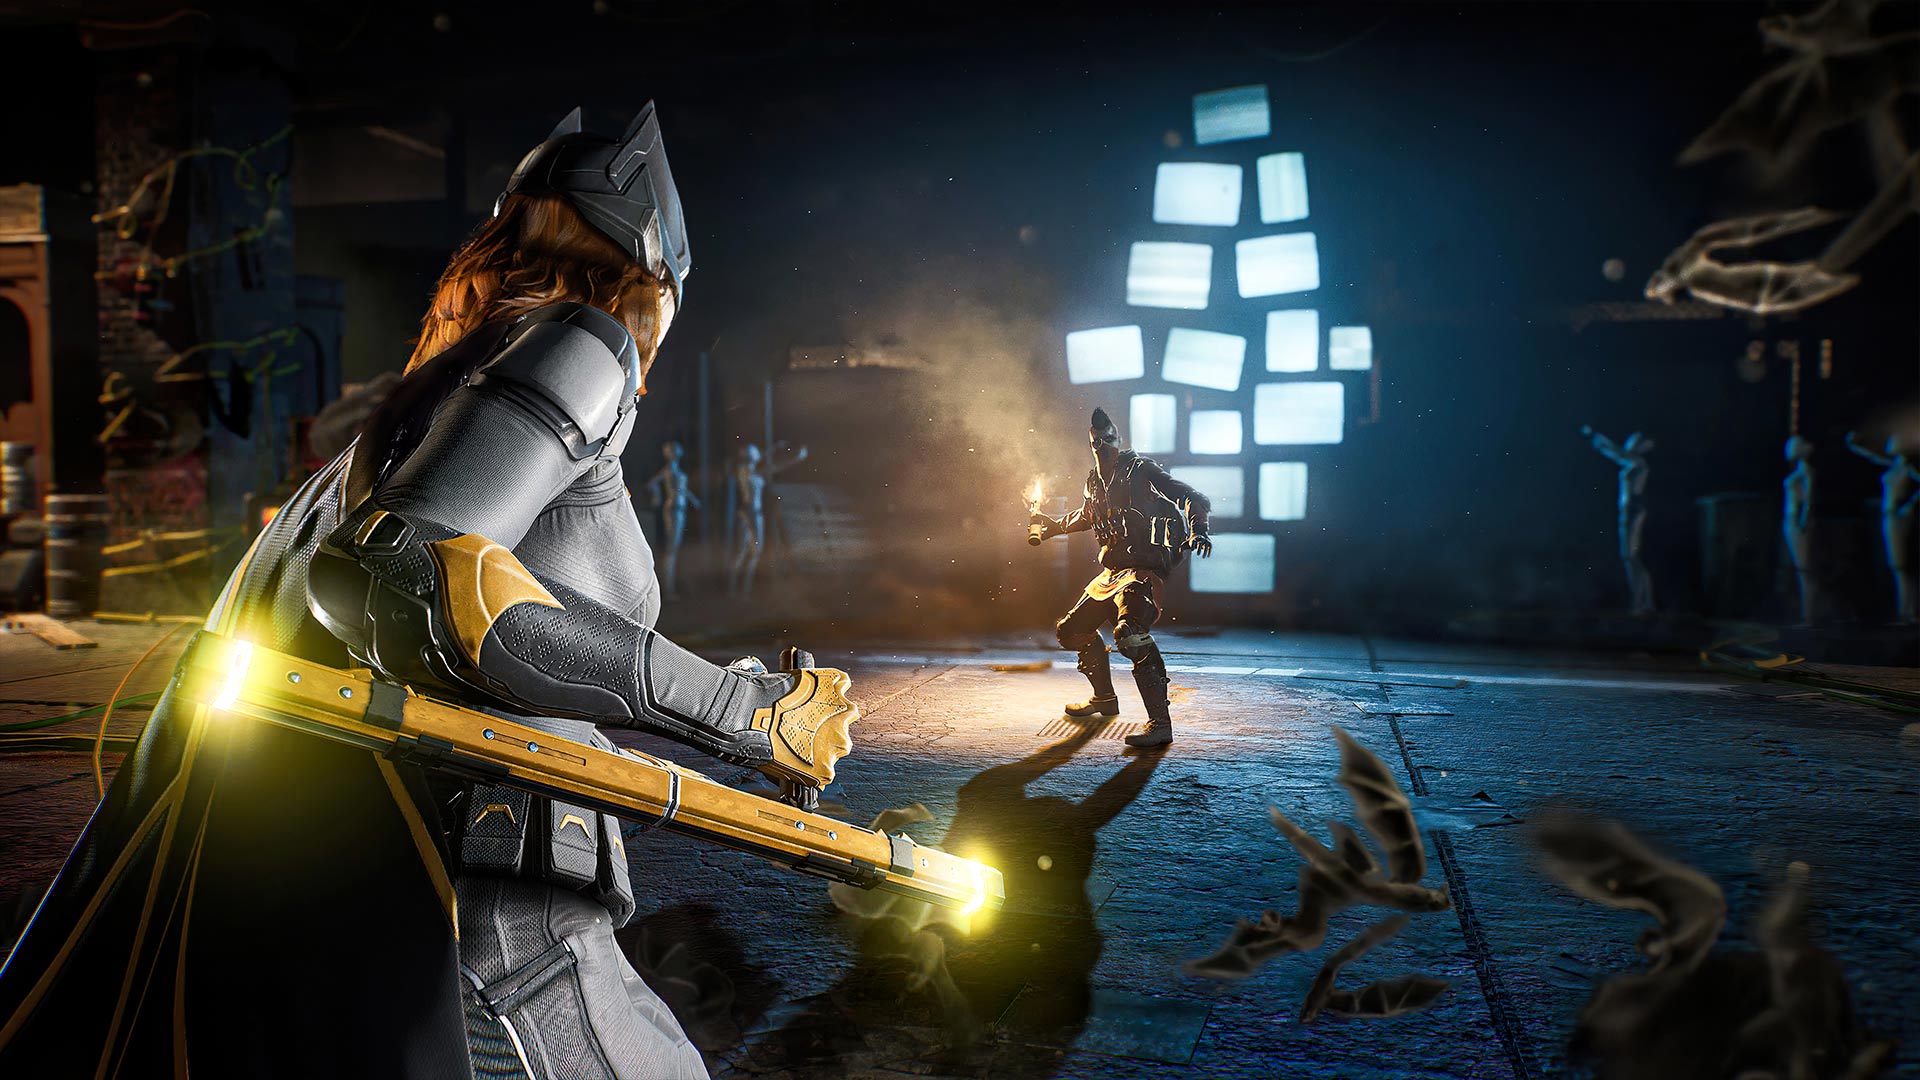 Gotham Knights DLC May Be Releasing Soon : r/GothamKnights